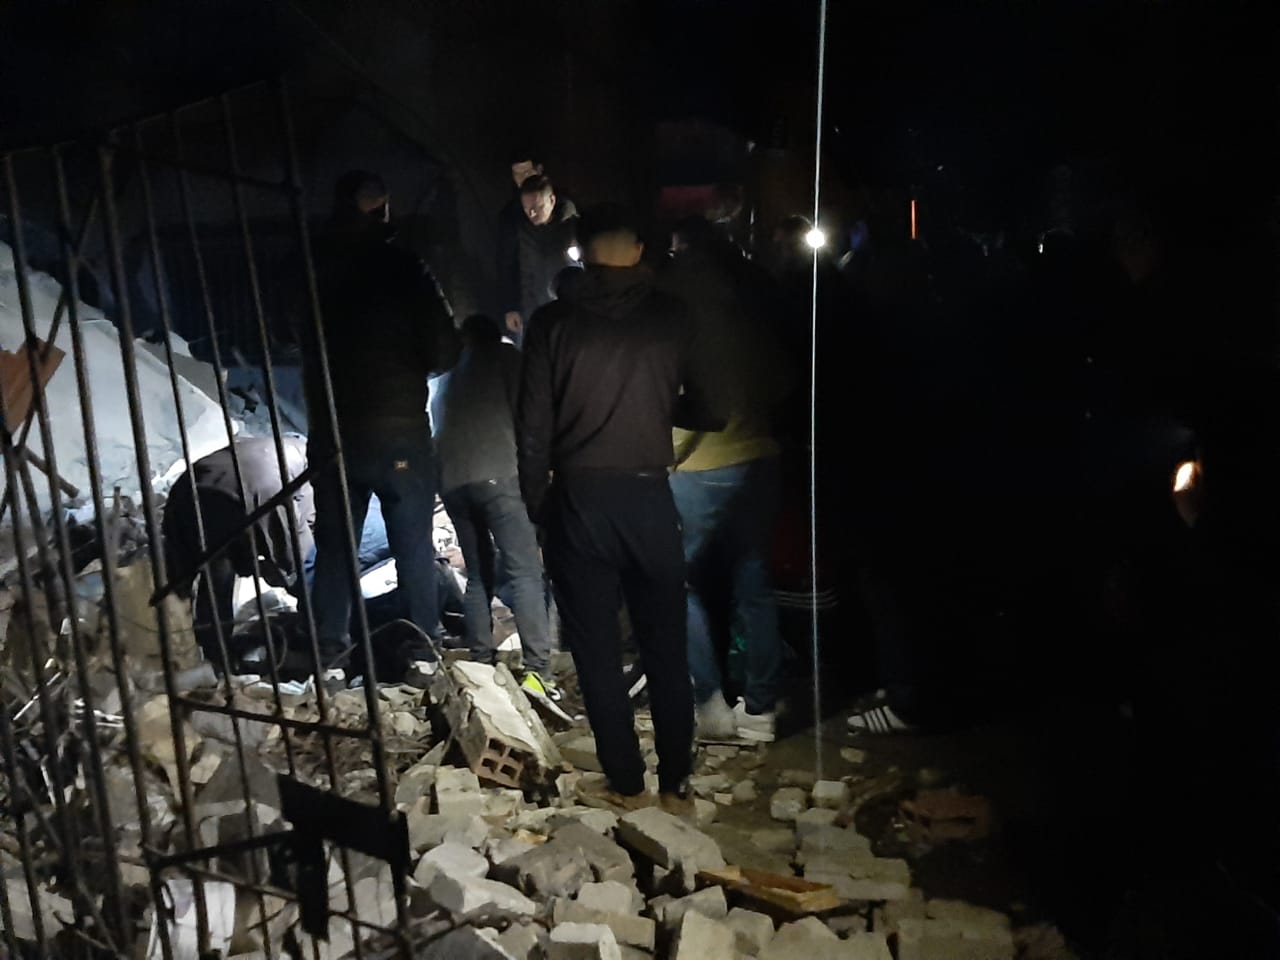 Tërmeti i 26 nëntorit, rrëfehet zjarrfikësi: Poshtë rrënojave kërkonin ndihmë, Lindita Carën e shpëtoi lavatriçja